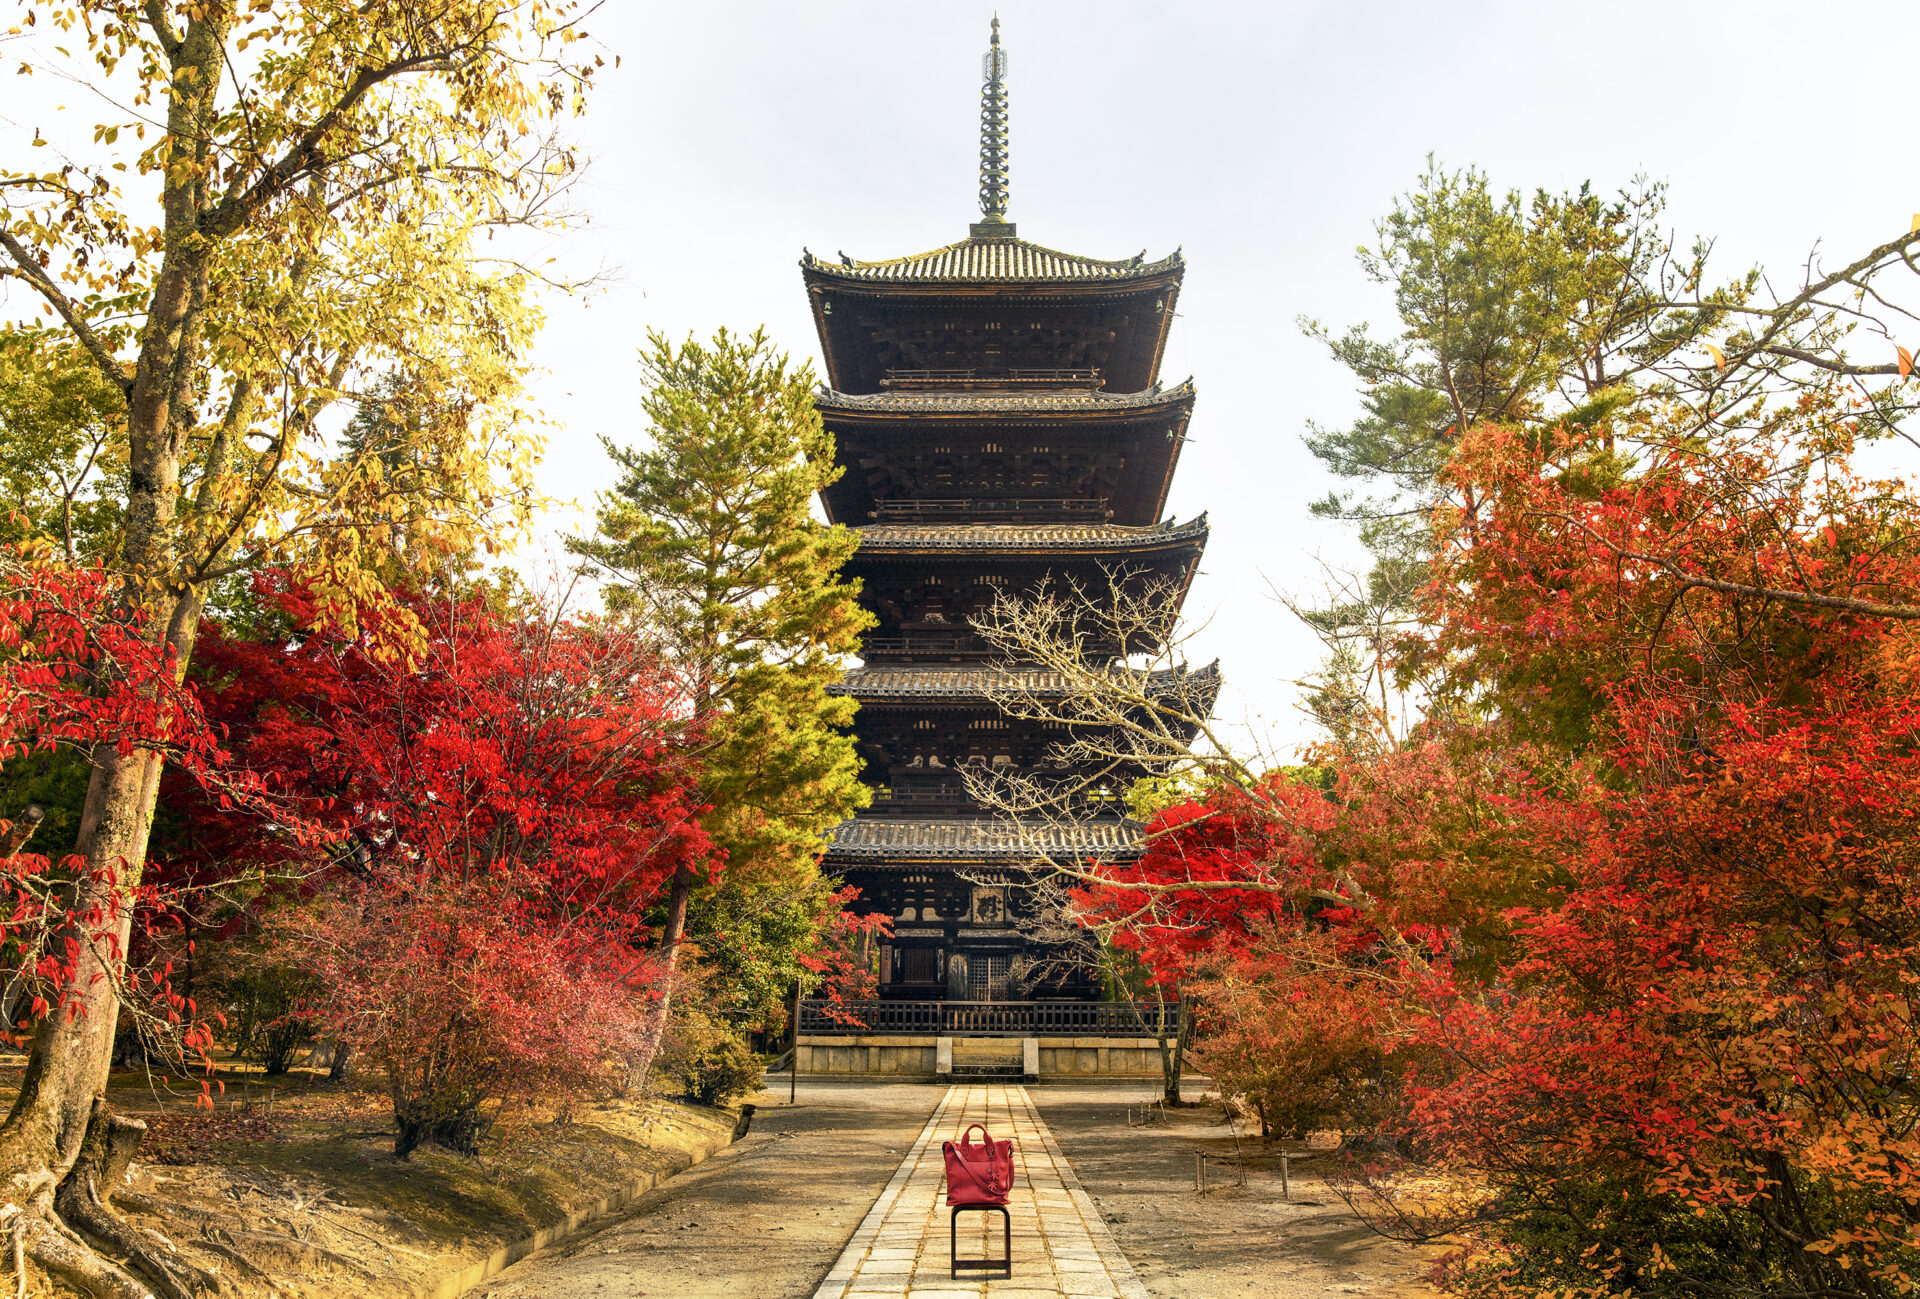 京都の紅葉を見る穴場としてイチオシの仁和寺。その仁和寺の紅葉見頃や見所などをご紹介します。 | caedeKyoto[カエデ京都]  紅葉と伝統美を引き継ぐバッグ